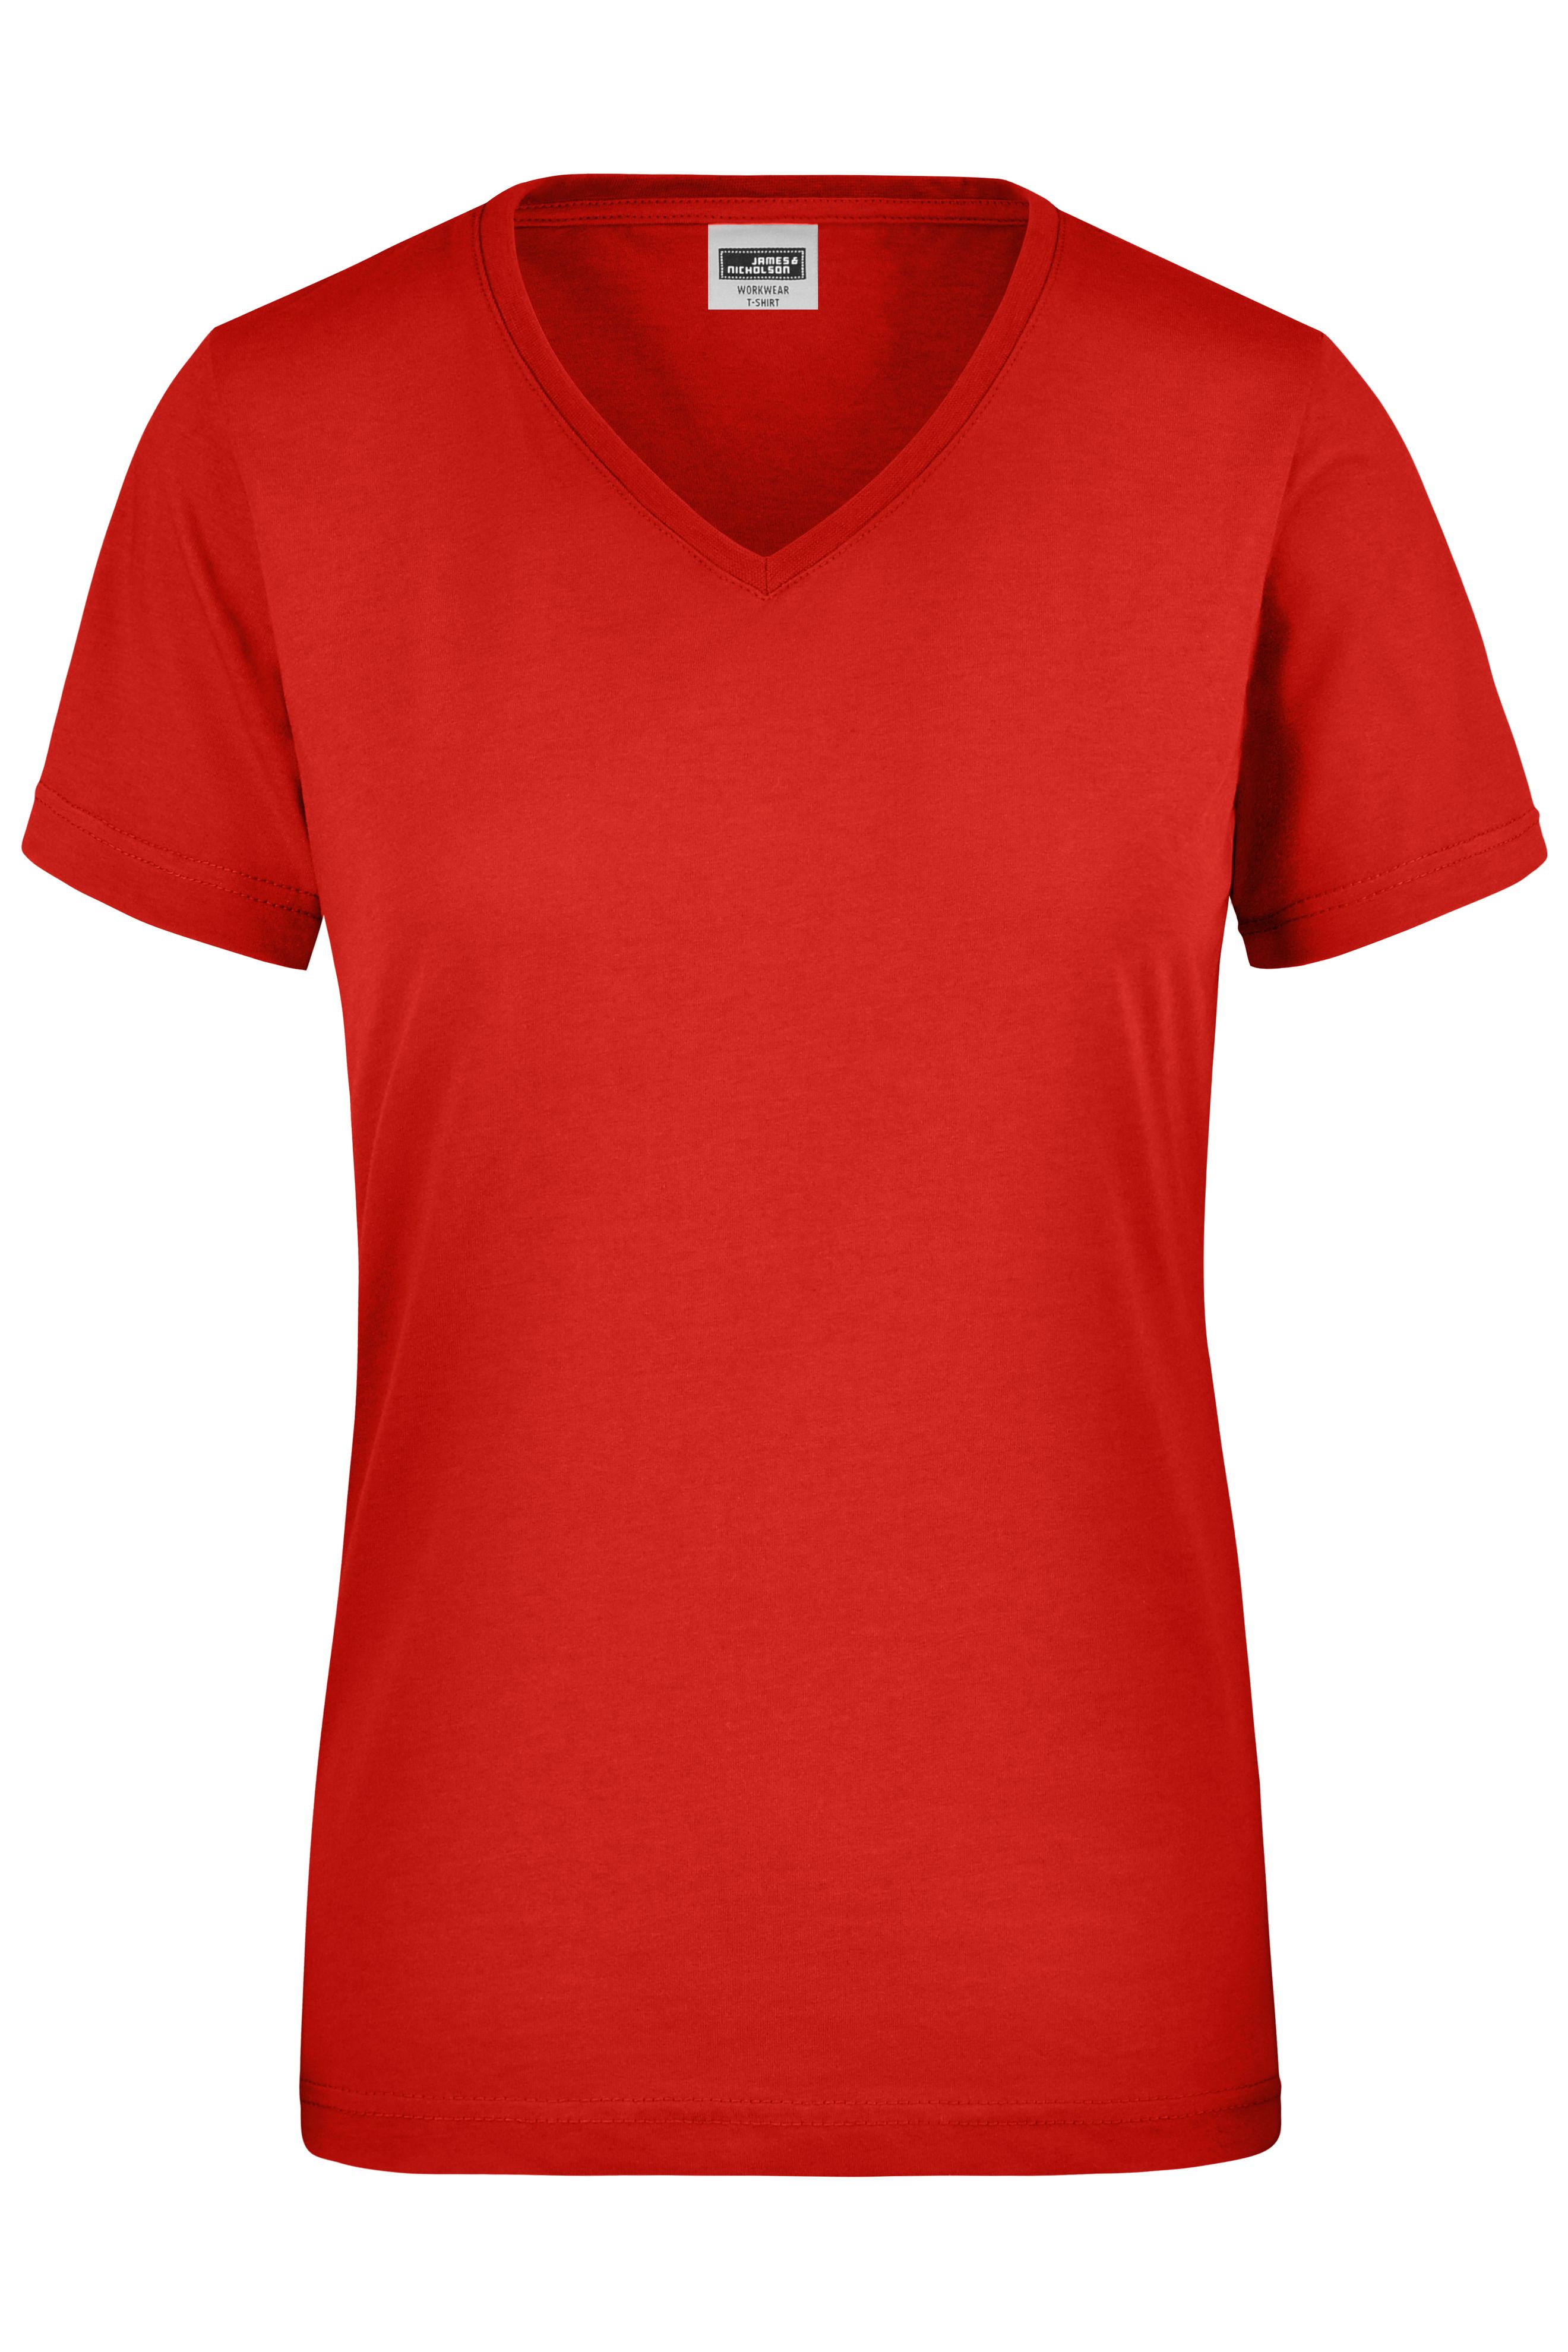 Ladies' Workwear T-Shirt JN837 Strapazierfähiges und pflegeleichtes T-Shirt